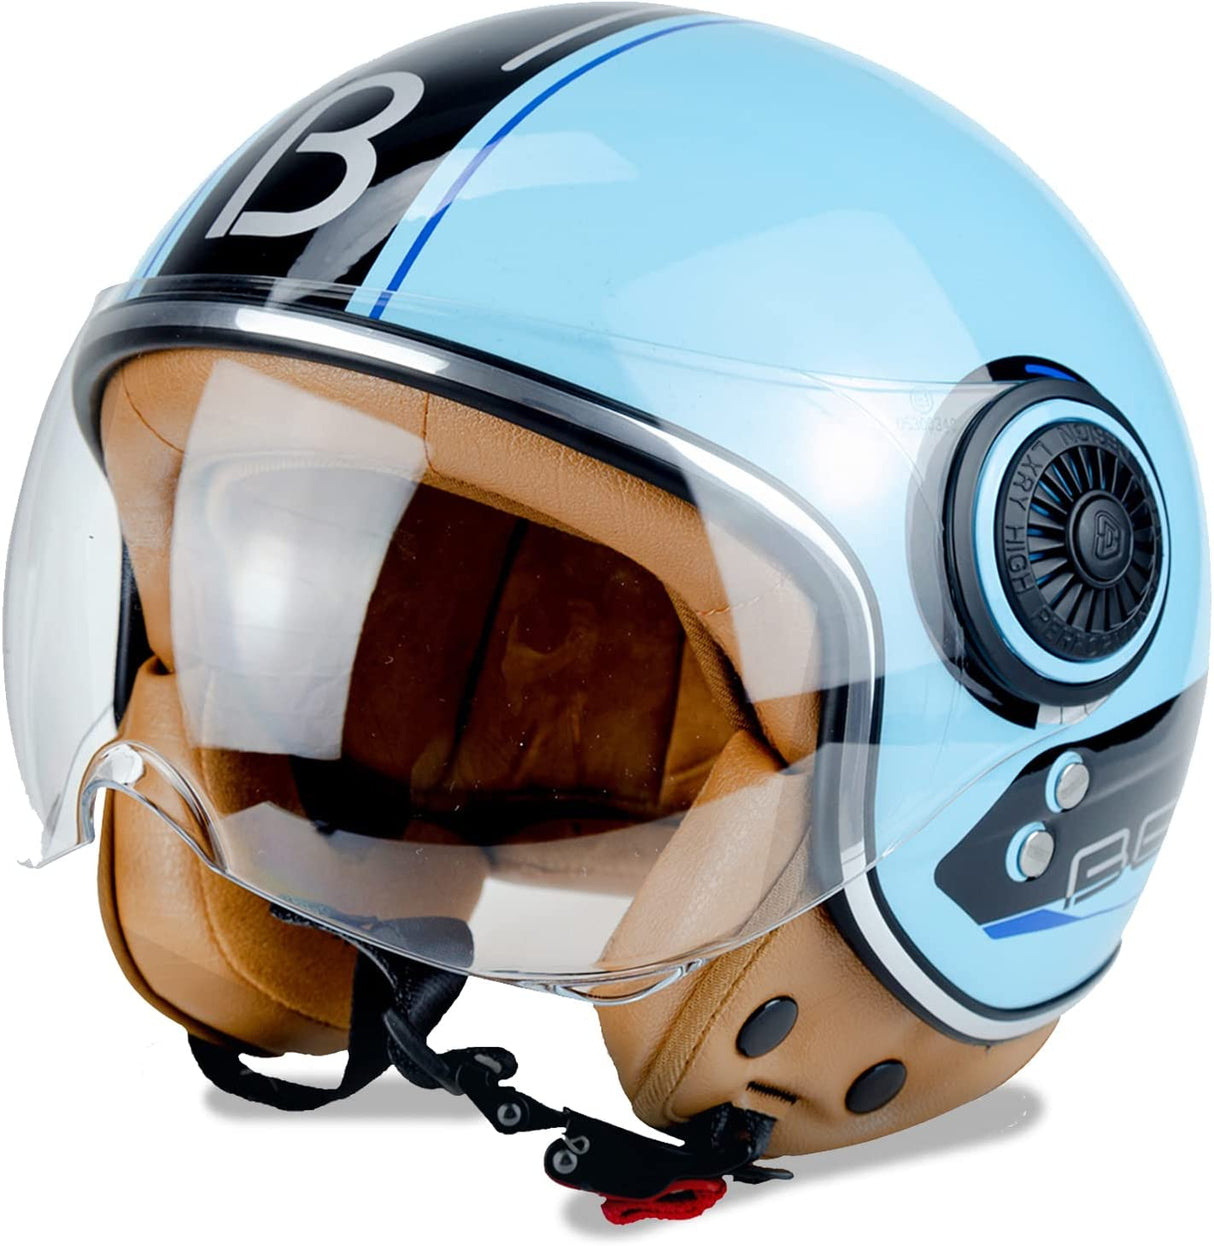 B-155 Open Face Pilot Helmet